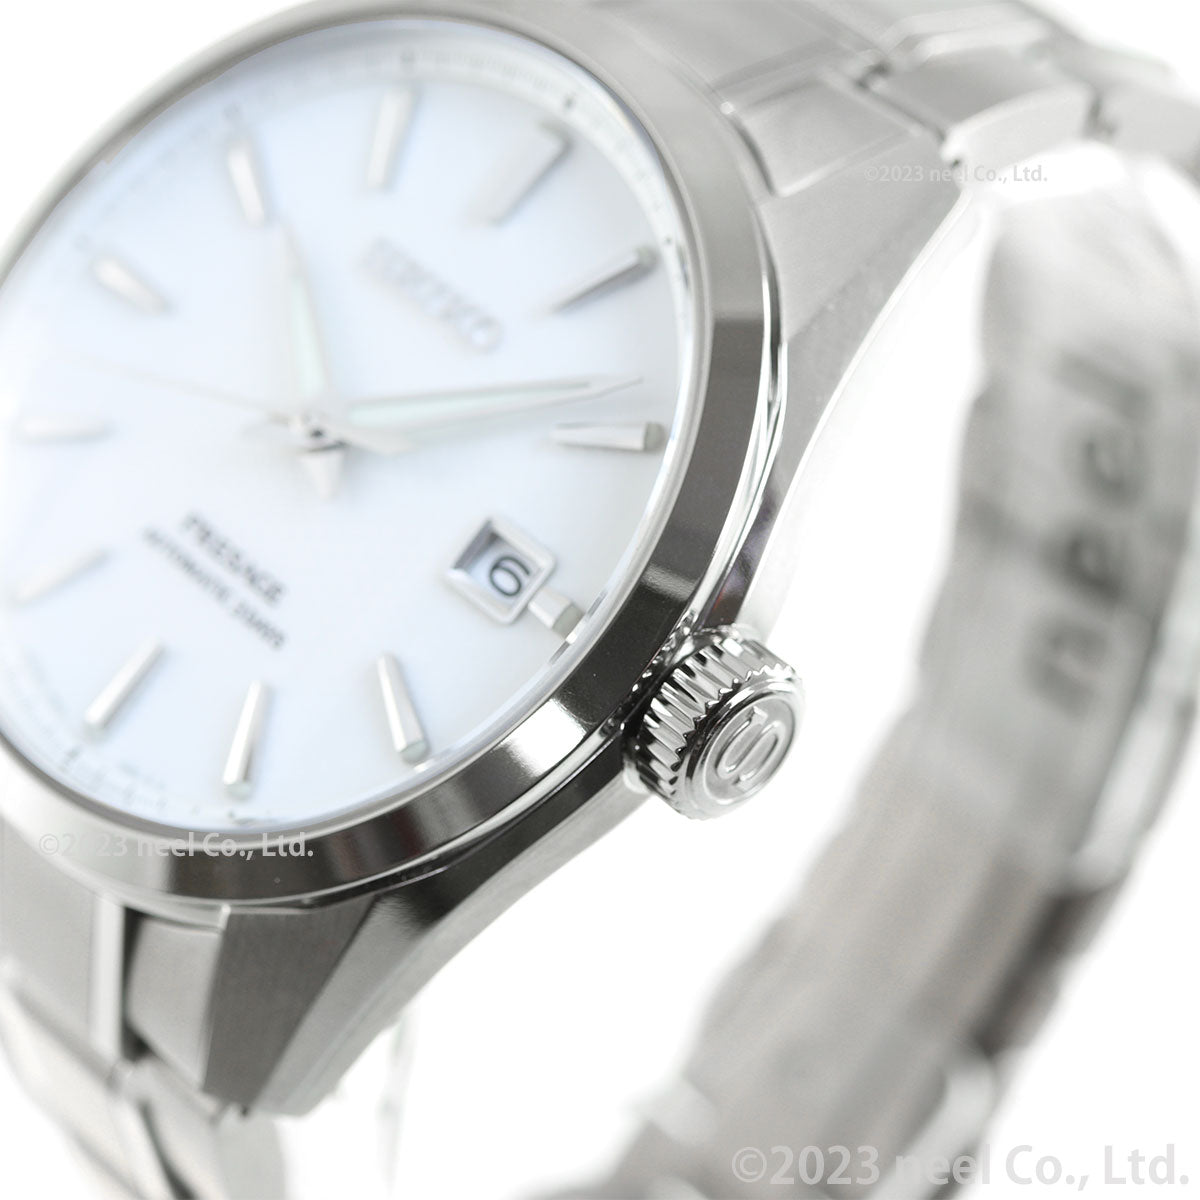 セイコー SEIKO PRESAGE 腕時計 メンズ SARX115 プレザージュ プレステージライン 自動巻き 白練xシルバー アナログ表示